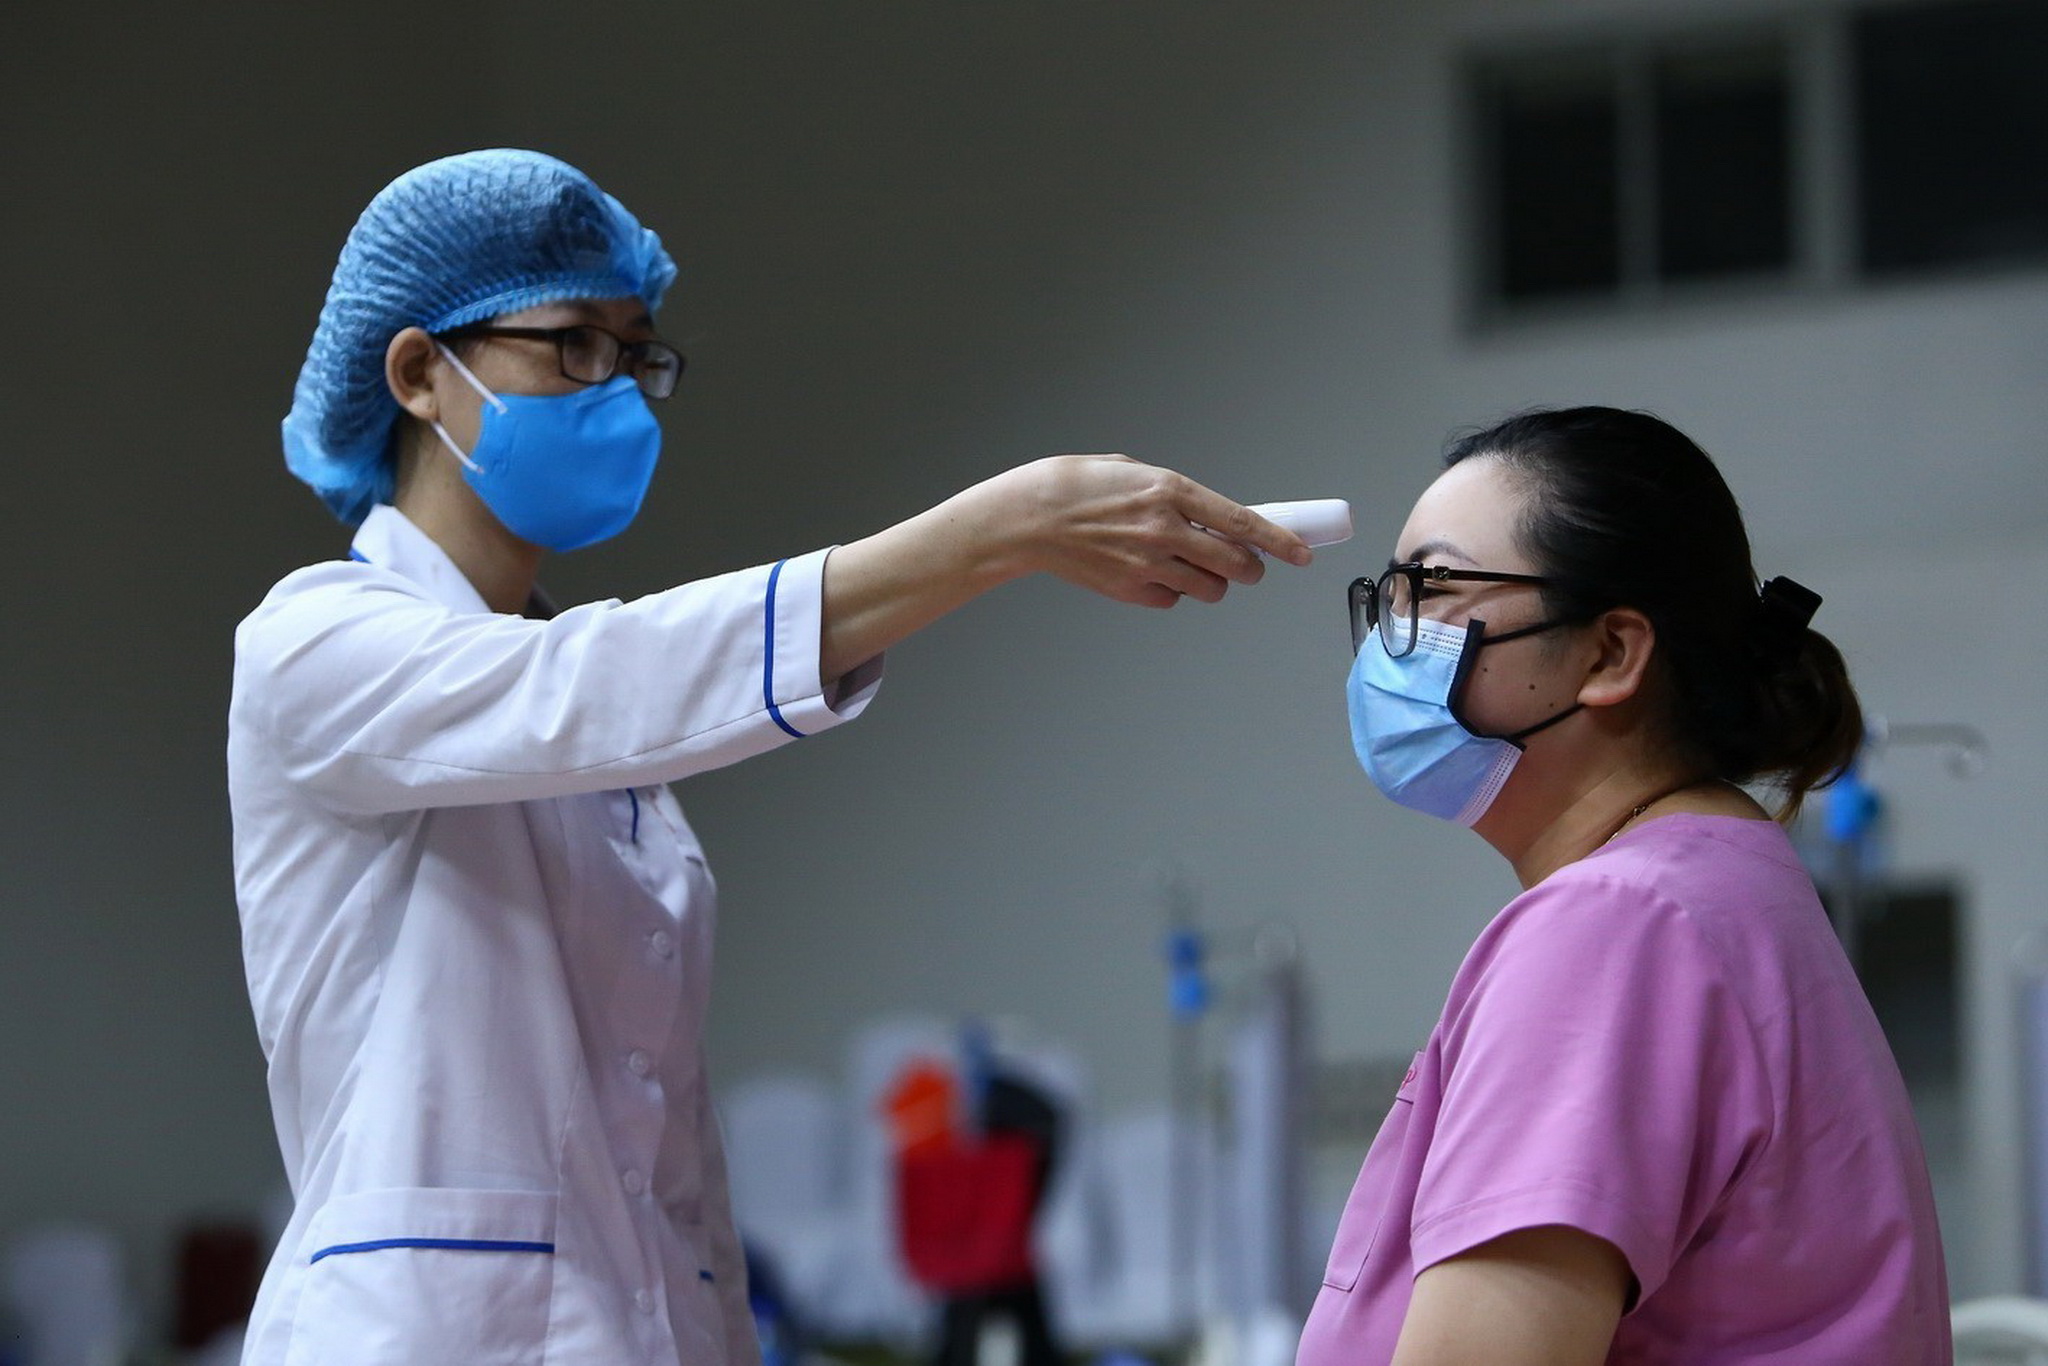 Kiểm tra thân nhiệt cho một người dân trong khu vực cách ly ở Viện Huyết học và Truyền máu Trung ương, Hà Nội. (Nguồn: TTXVN)